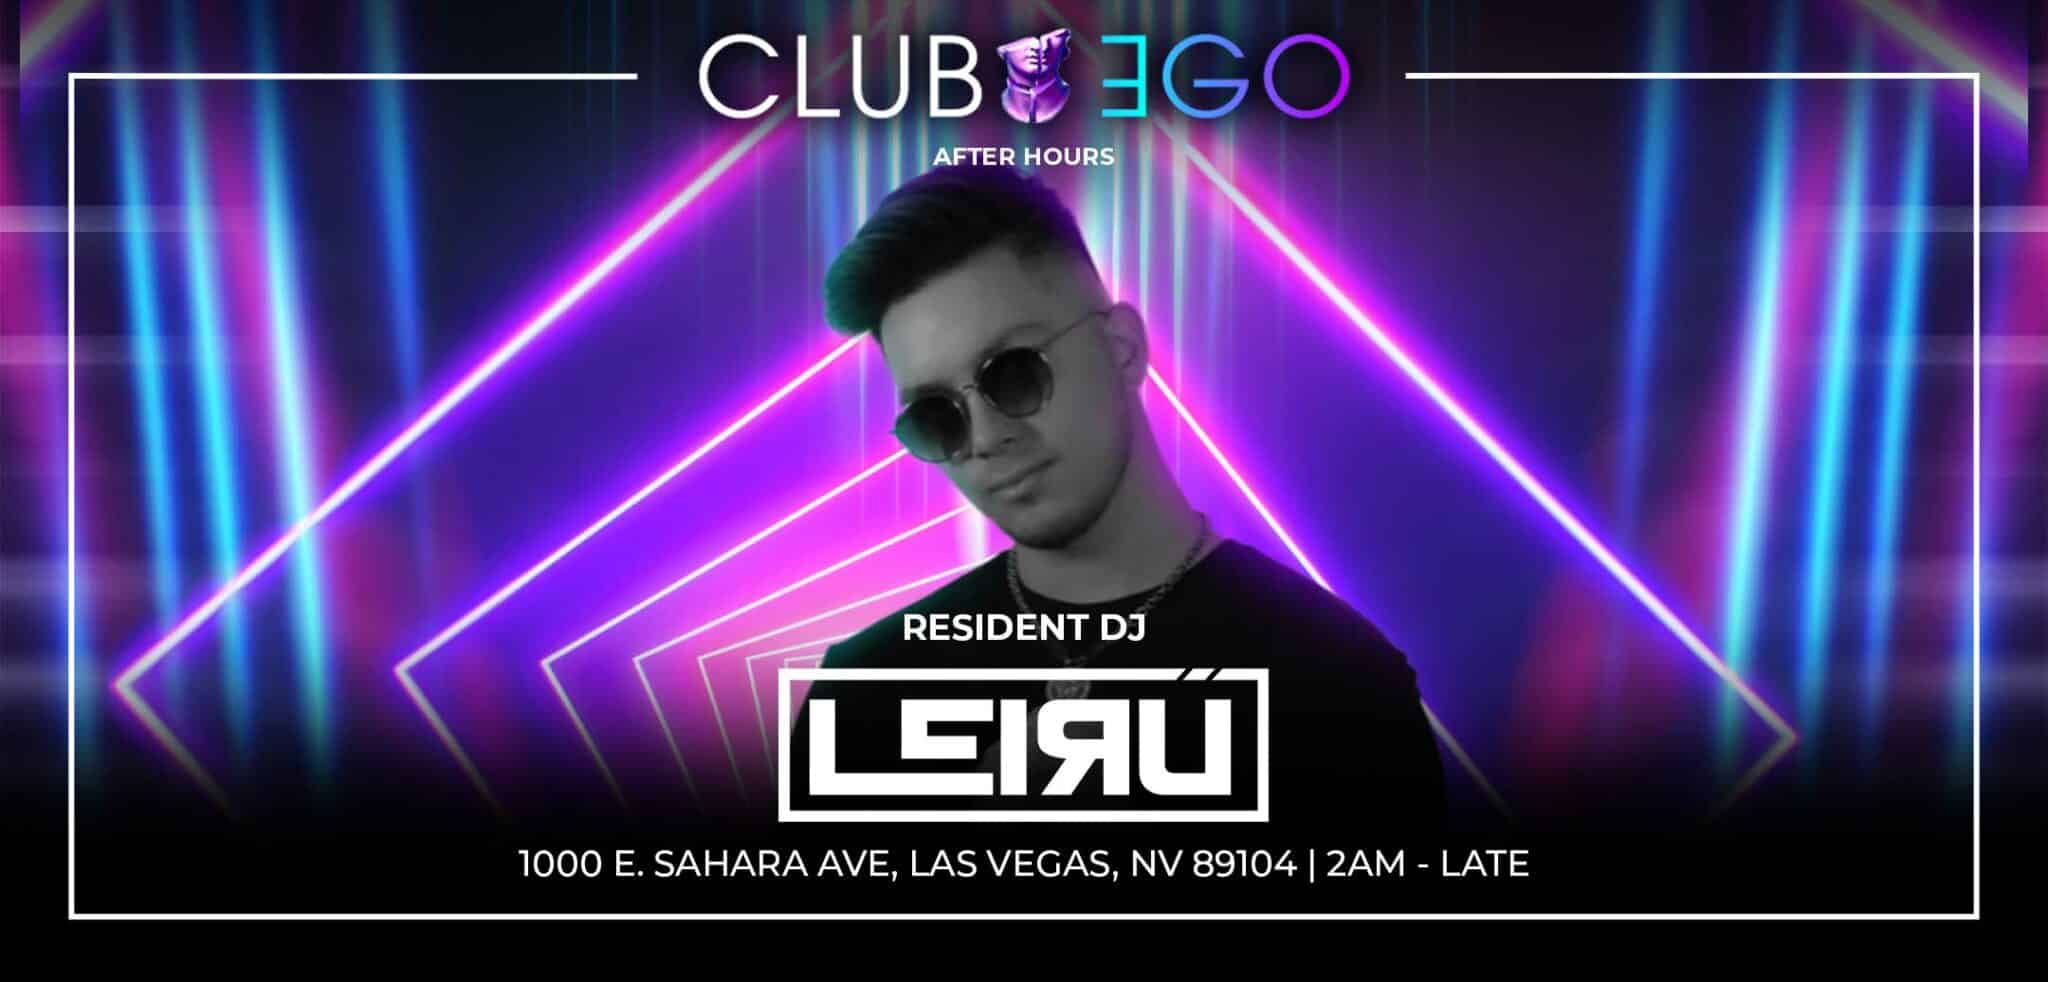 Club Ego Resident DJ, Leiru